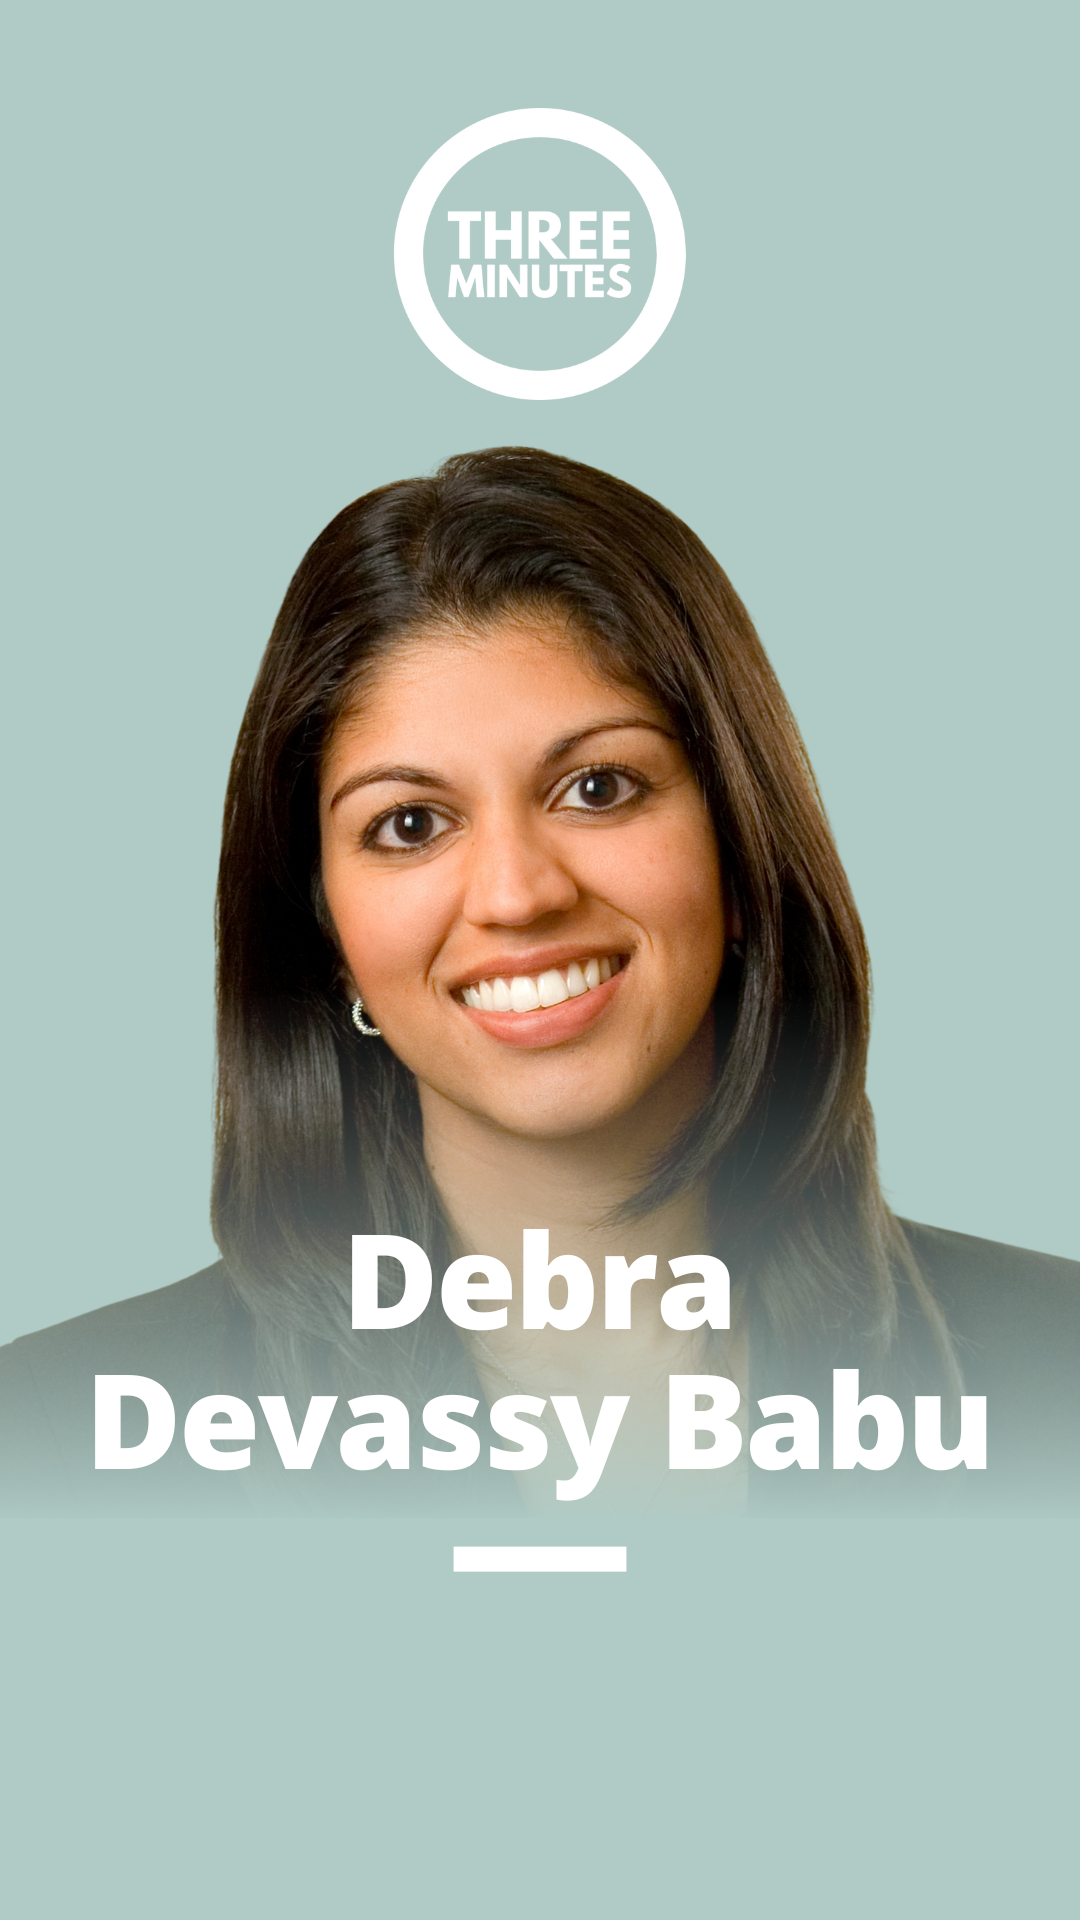 Debra Devassy Babu